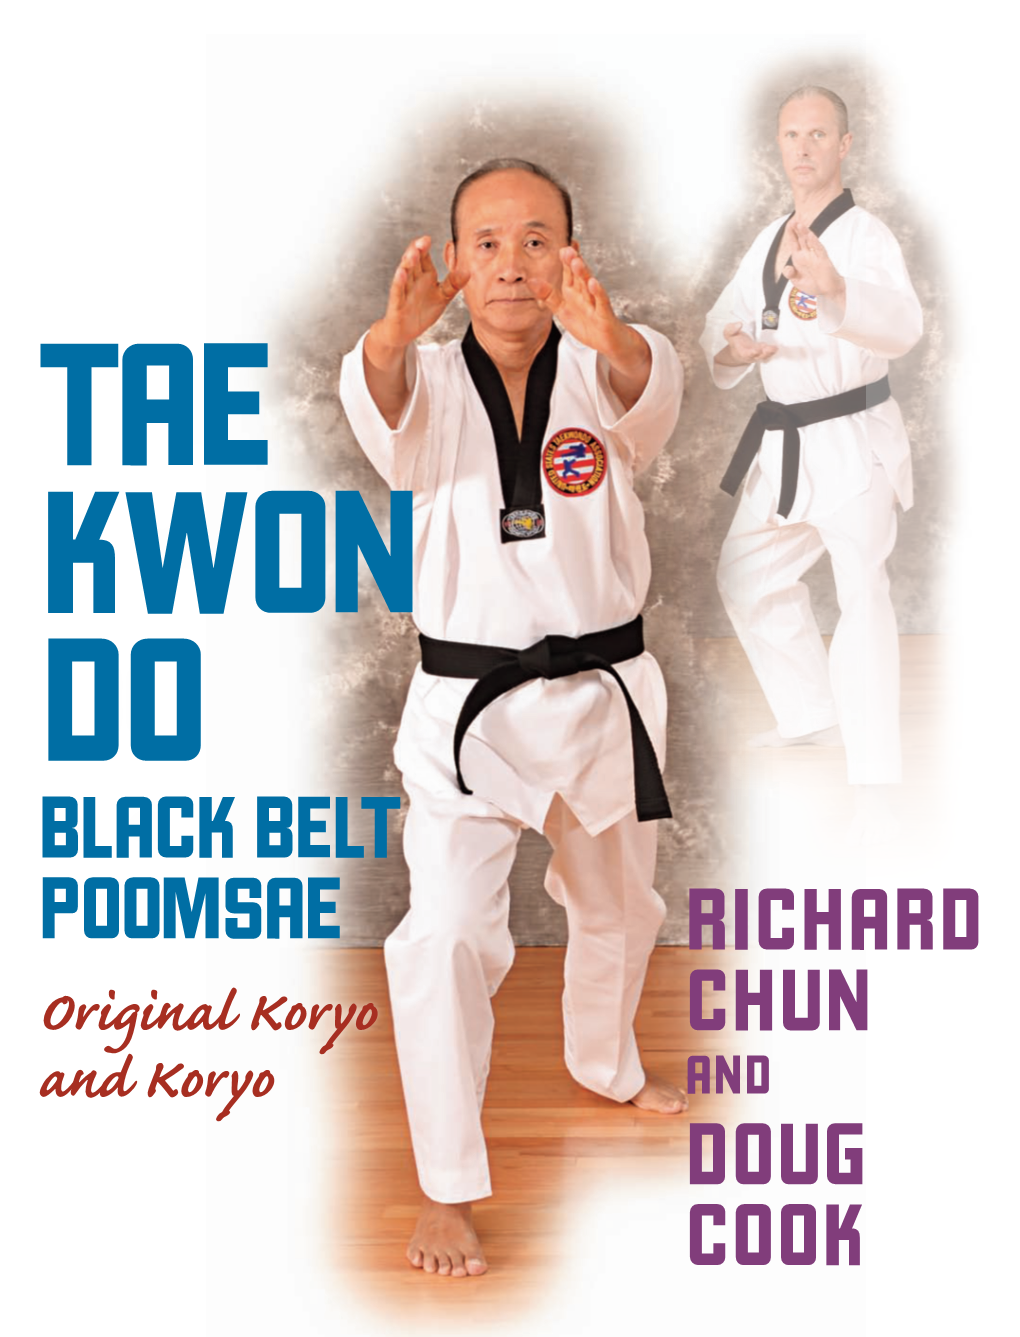 Richard Chun Doug Cook Black Belt Poomsae